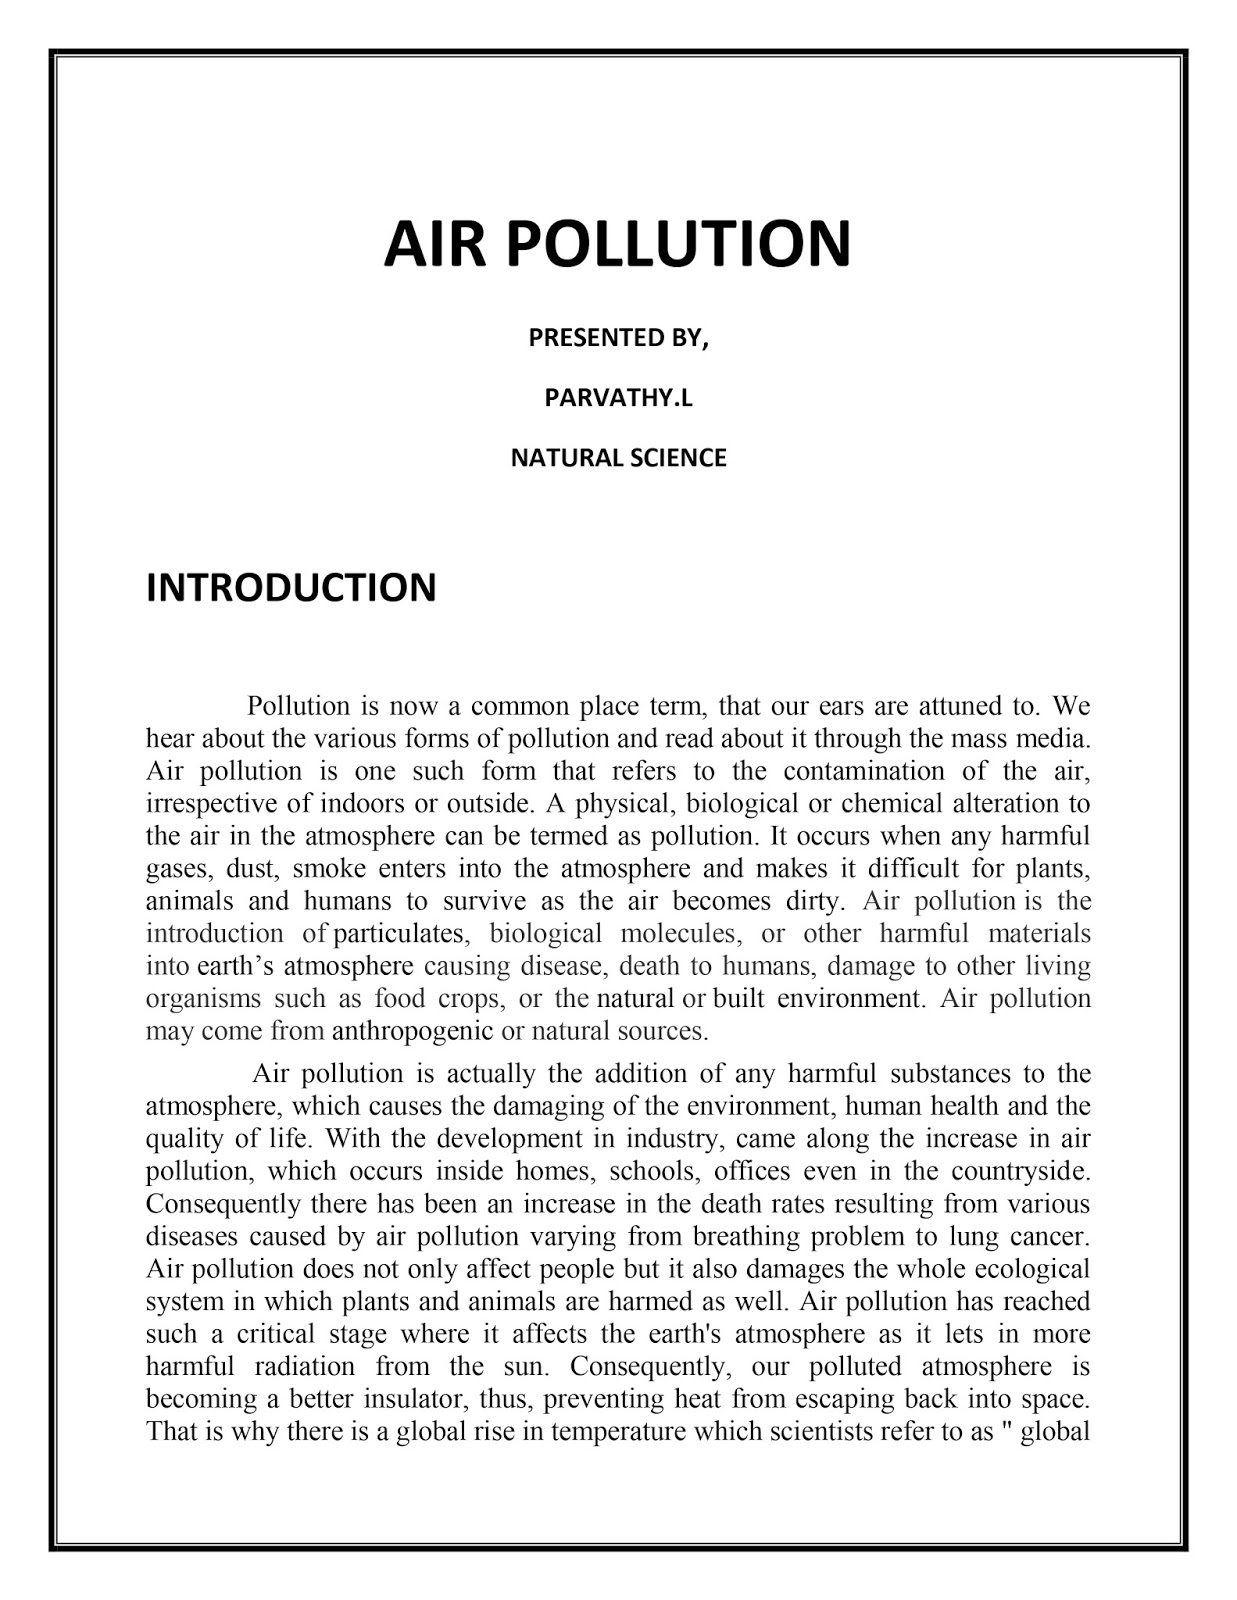 Essay air pollution